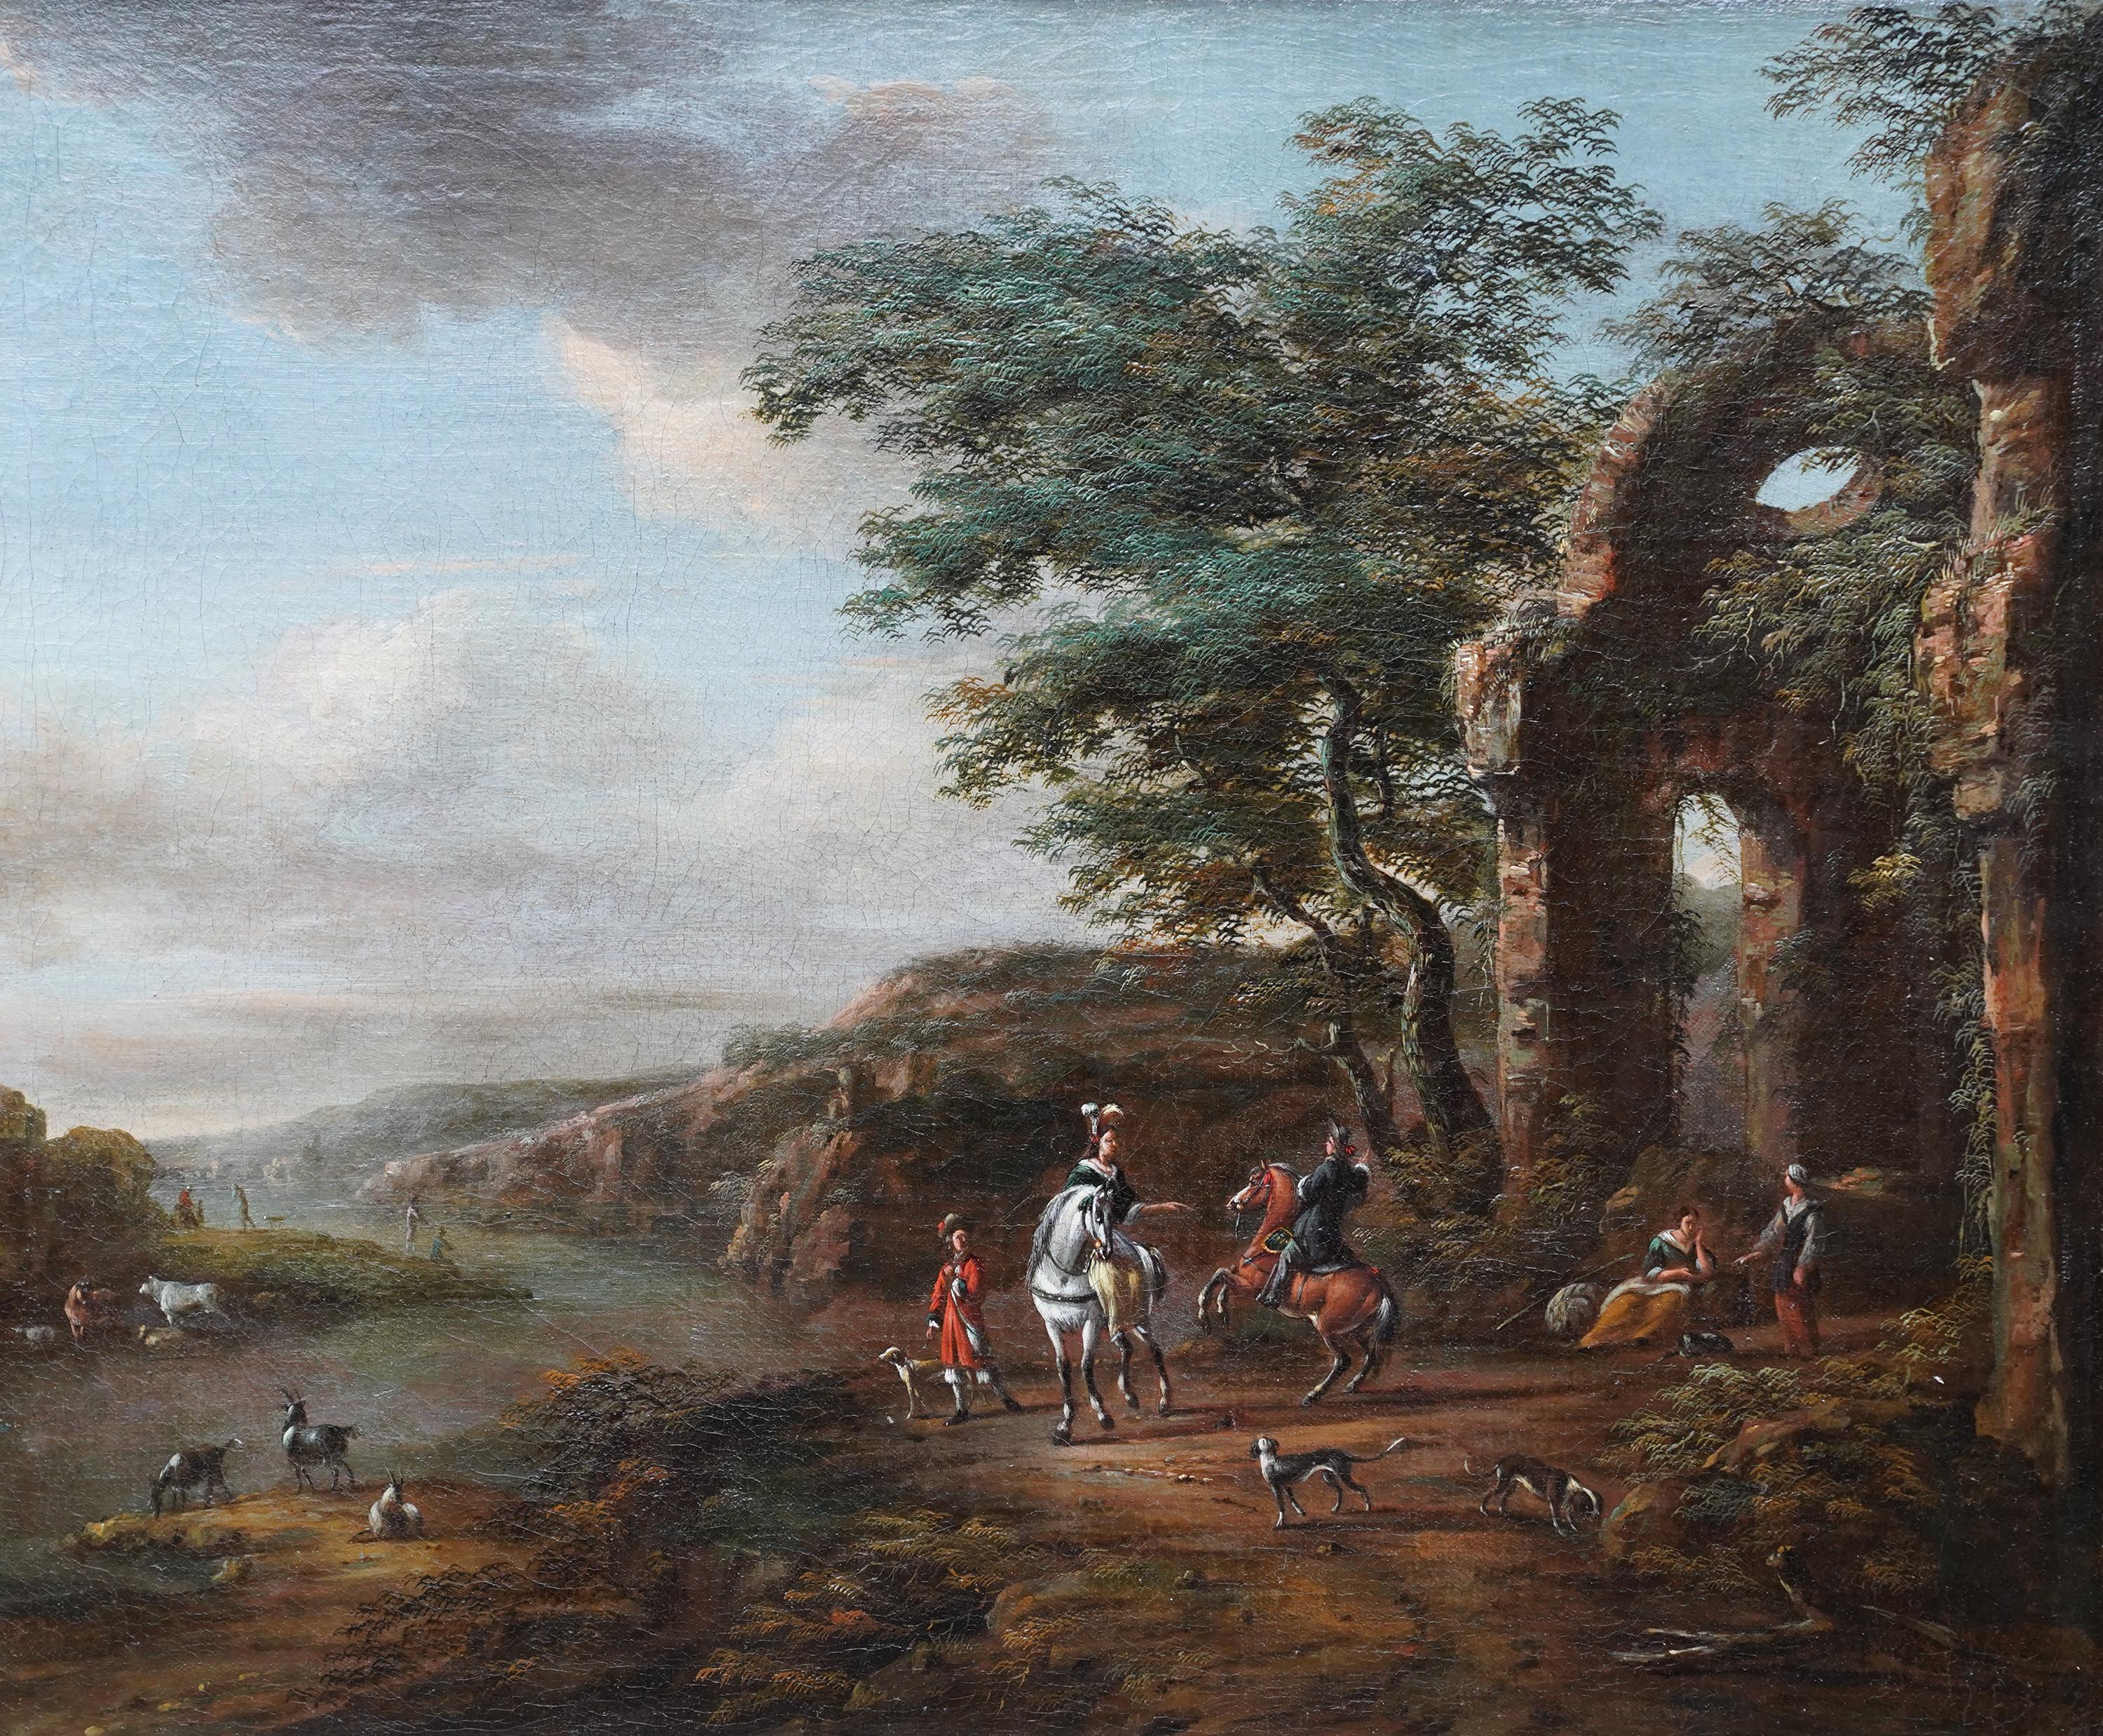 Reisende und Hunde in Landschaft, Ruinen auf der rechten Seite – Ölgemälde eines niederländischen Alten Meisters – Painting von Pieter Wouwerman